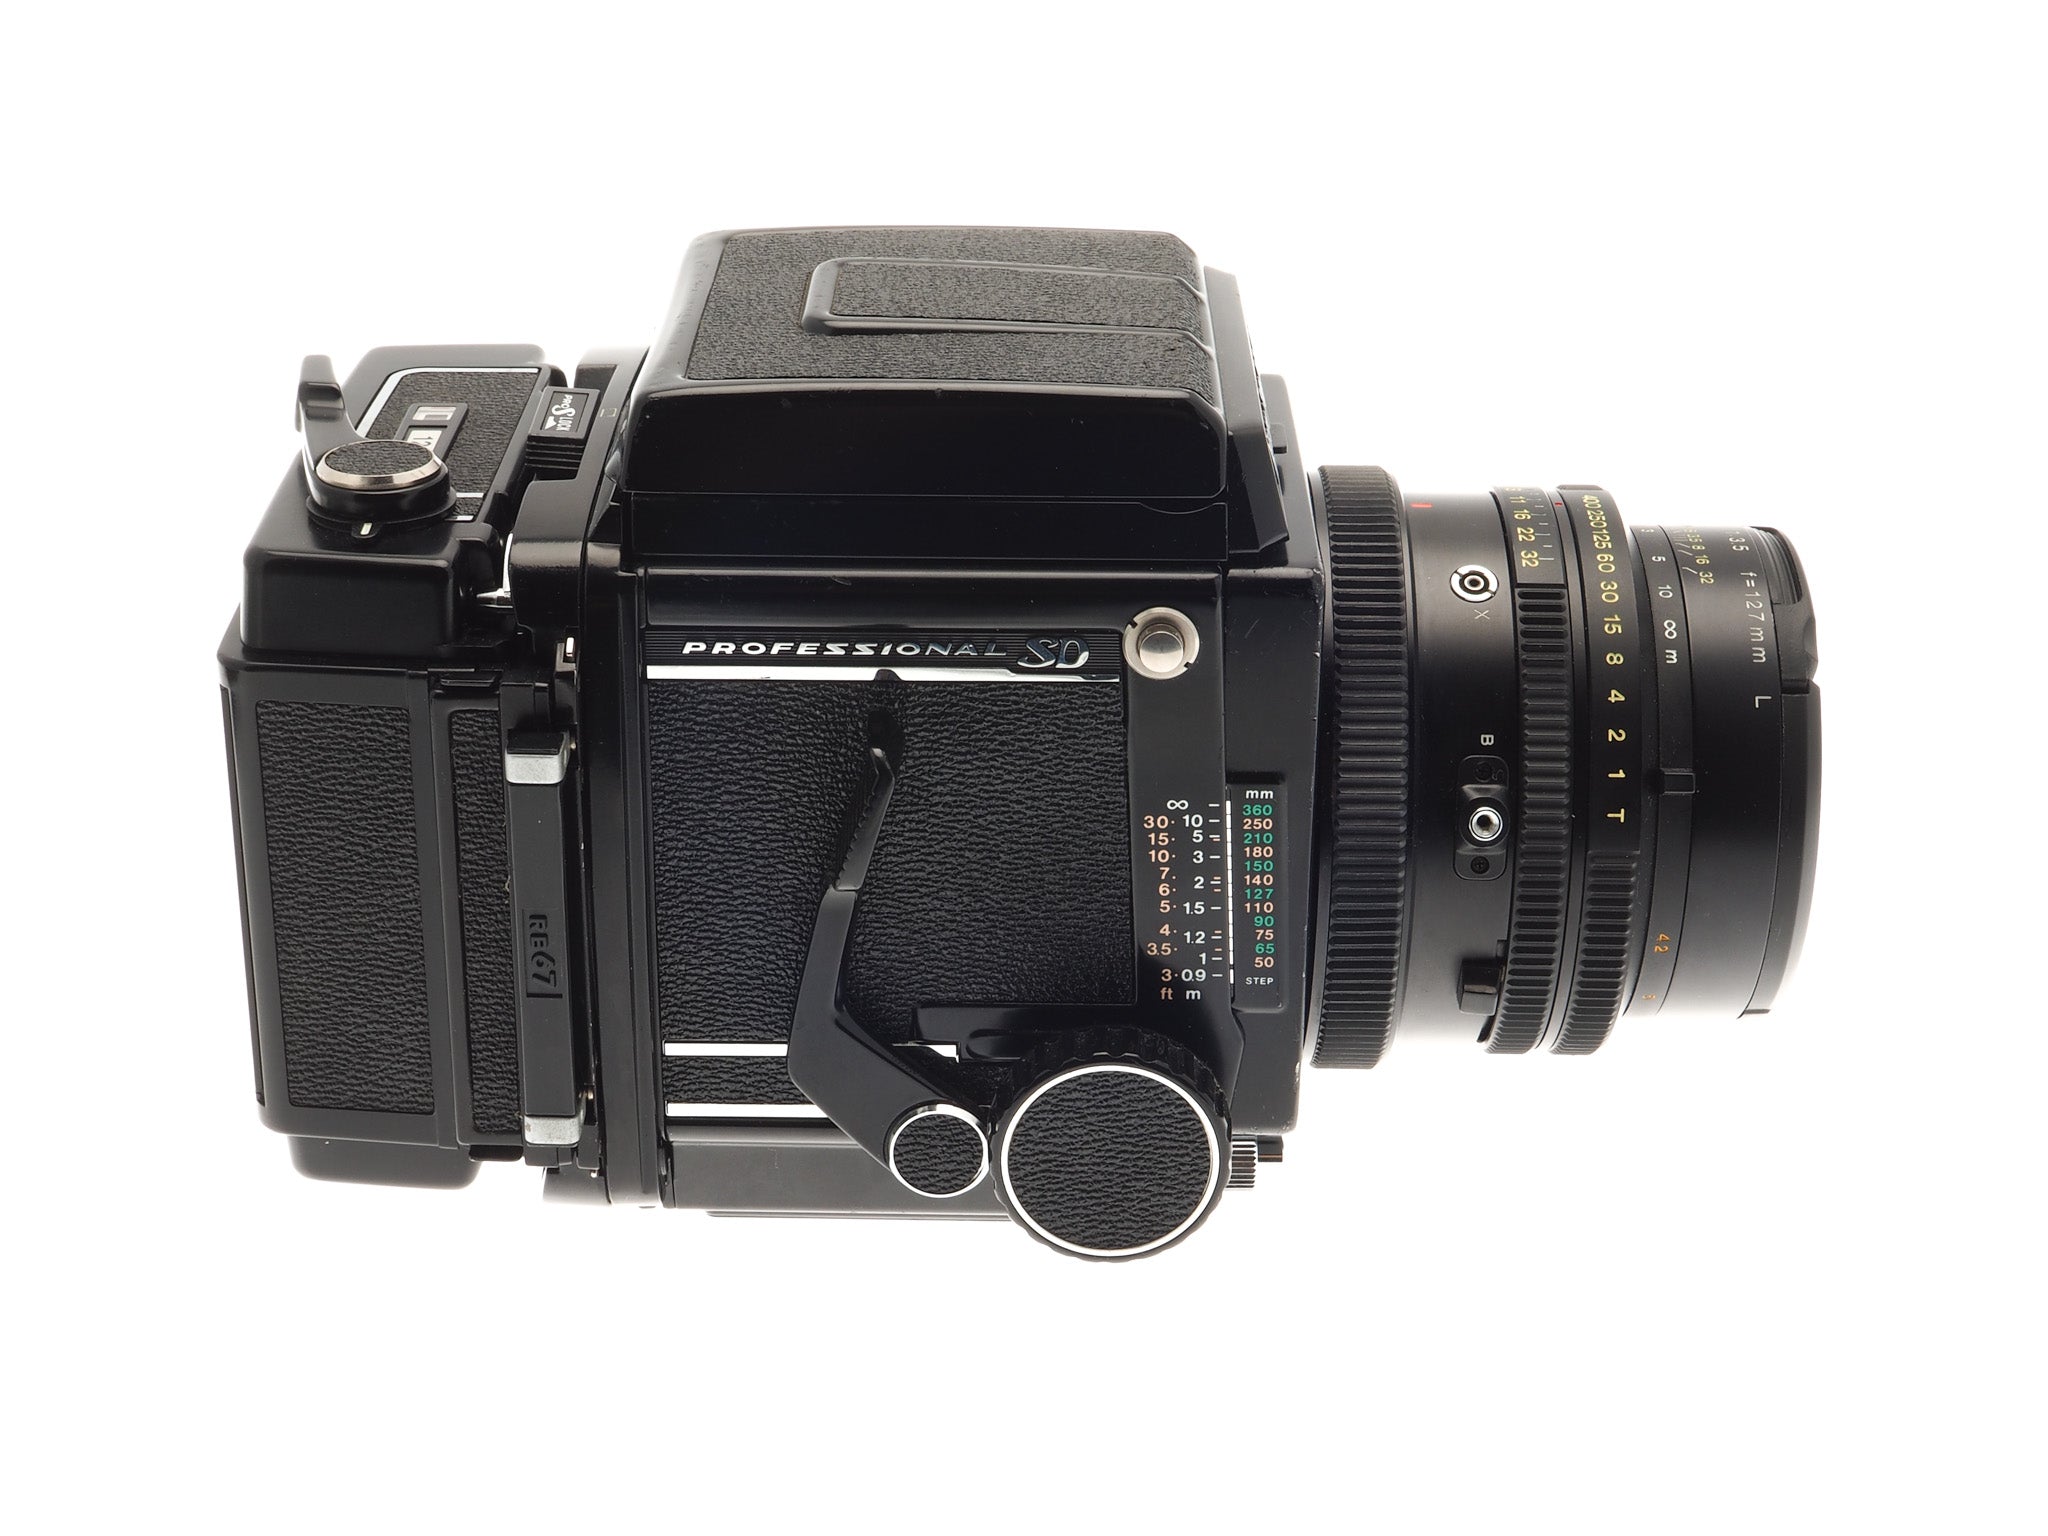 Mamiya RB67 Pro SD + 127mm f3.5 L K/L + 120 Pro-SD 6x7 Film Back + 